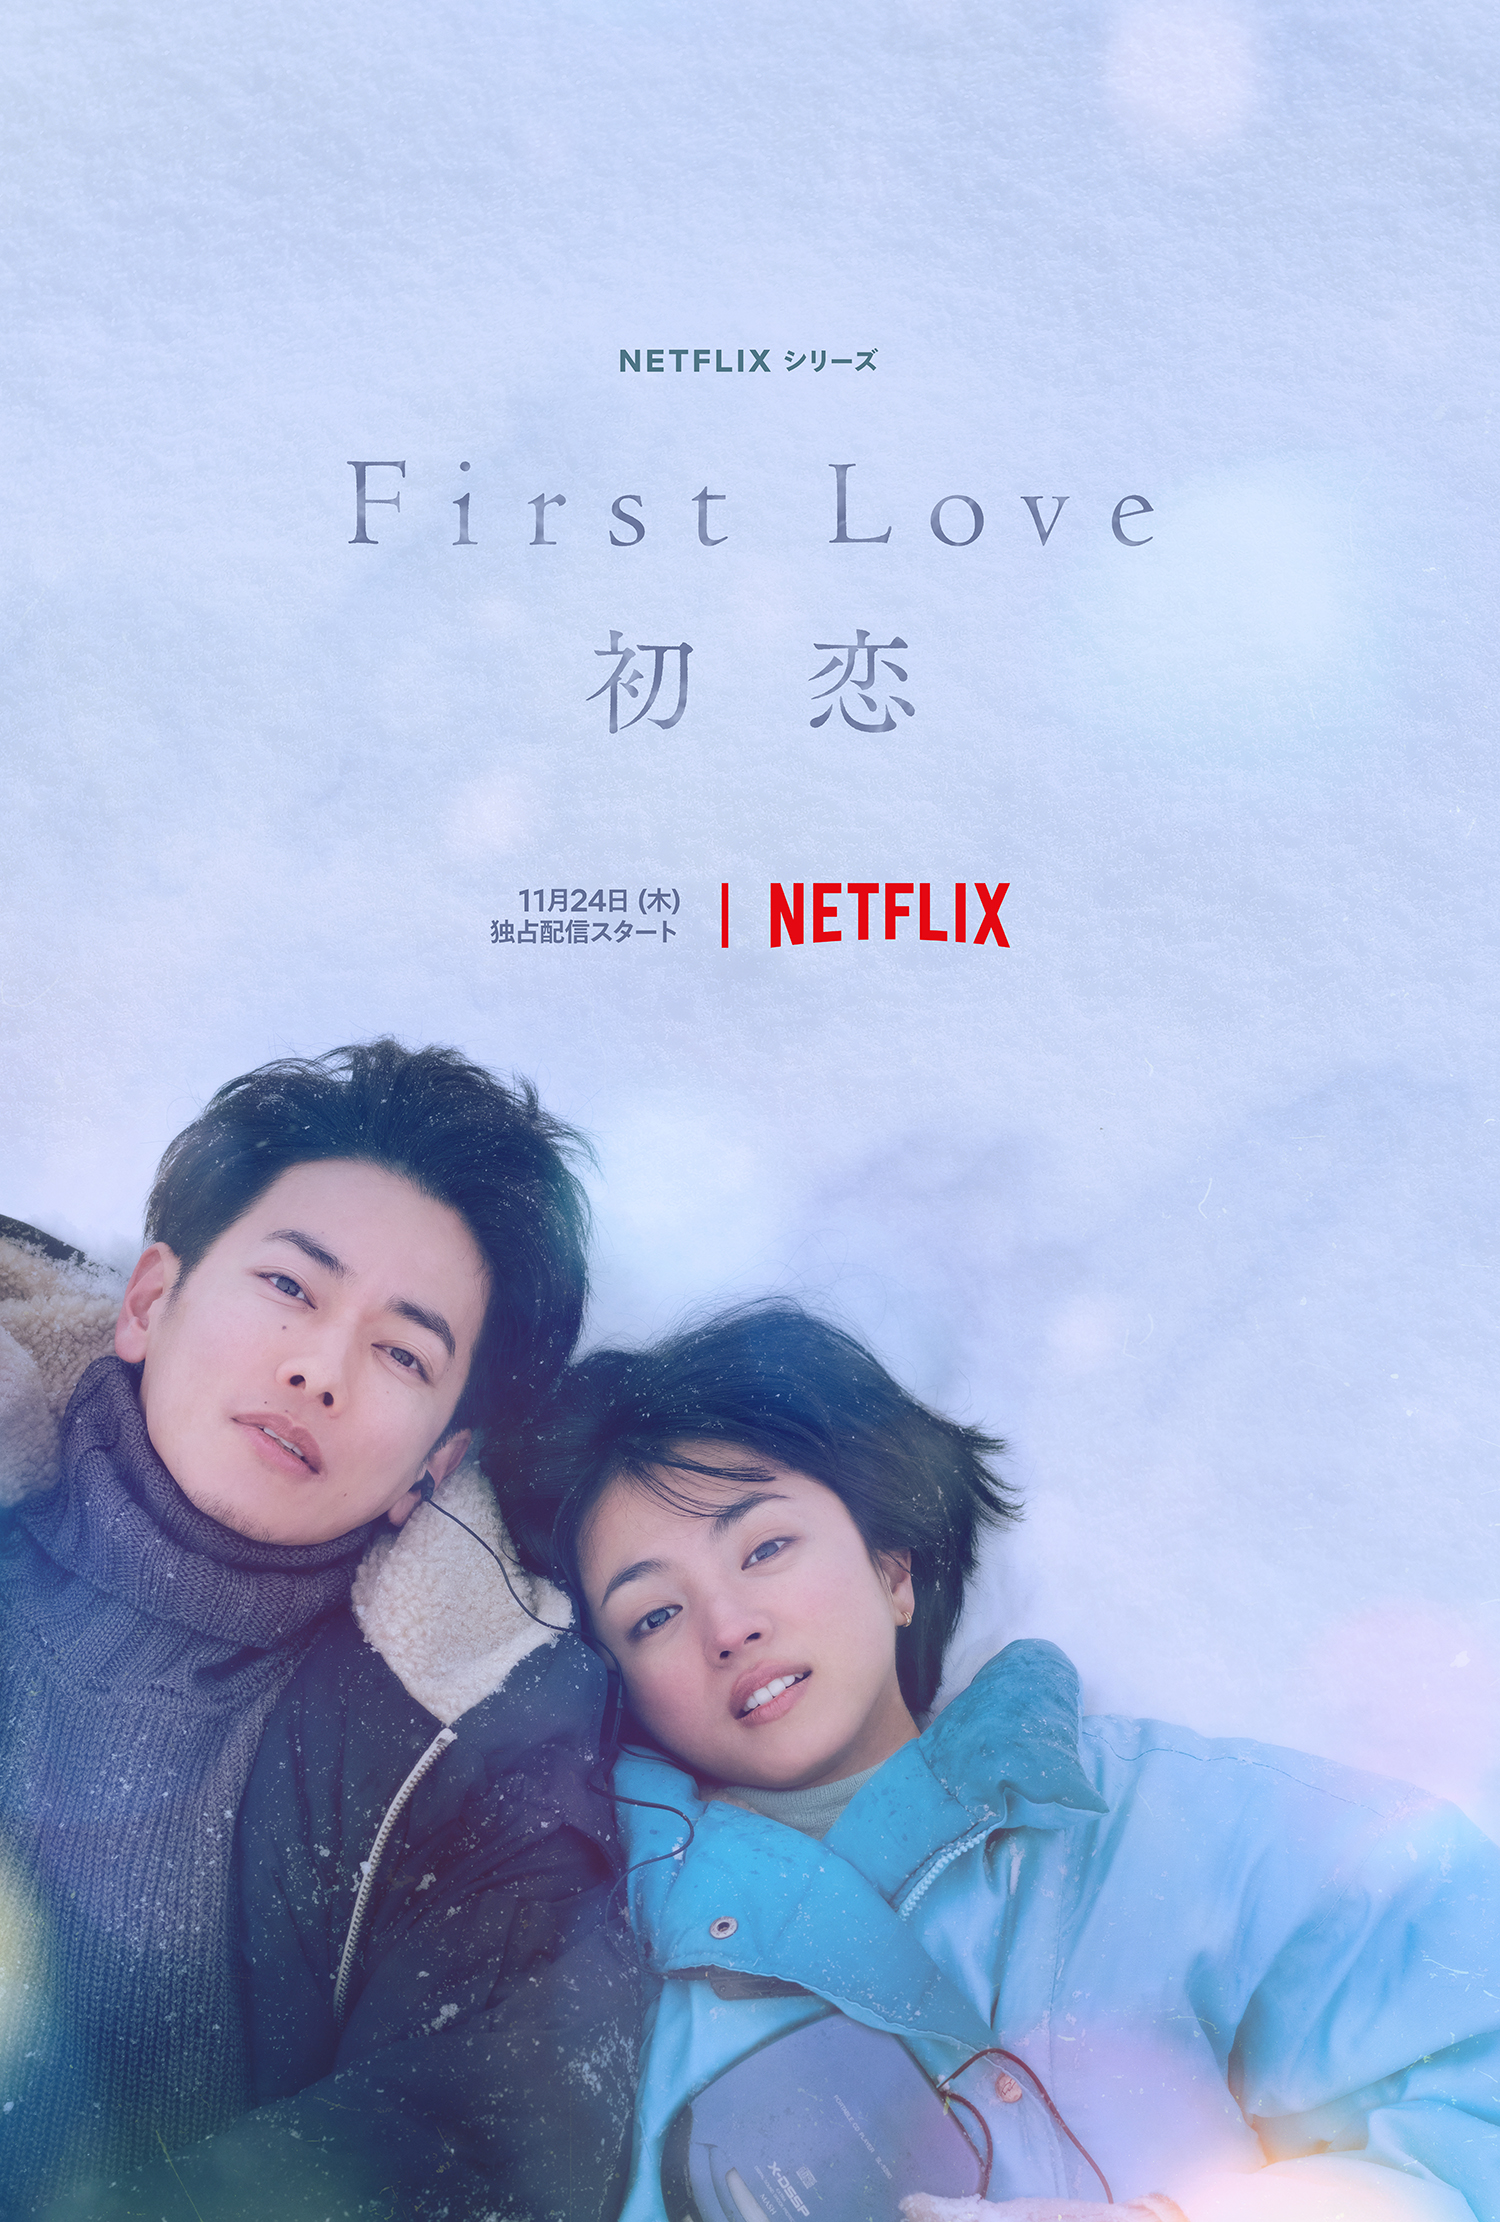 Netflix Series First Love Teaser Art